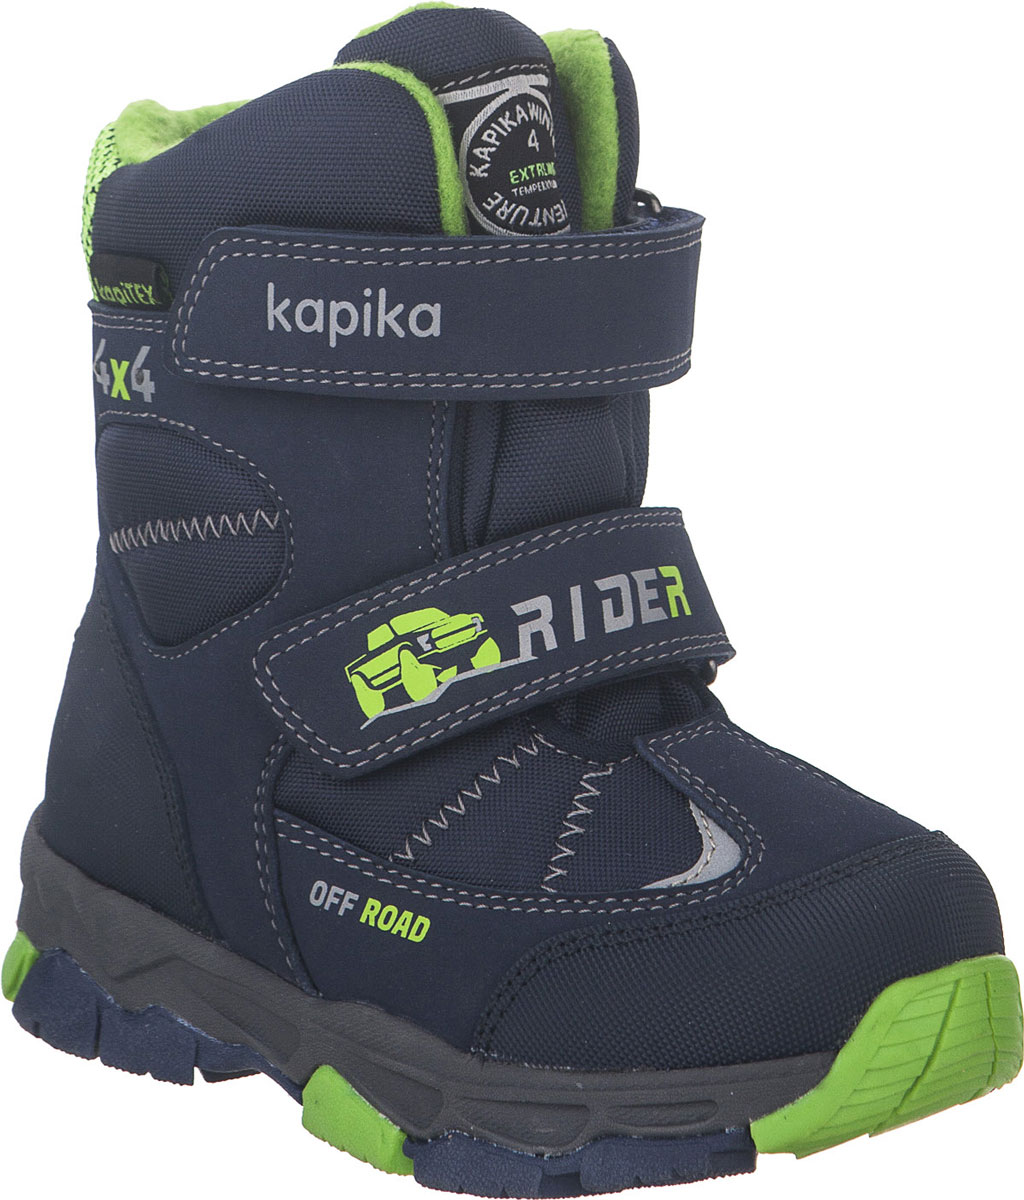 Ботинки для мальчика Kapika, цвет: темно-синий, салатовый. 42215-2. Размер 30